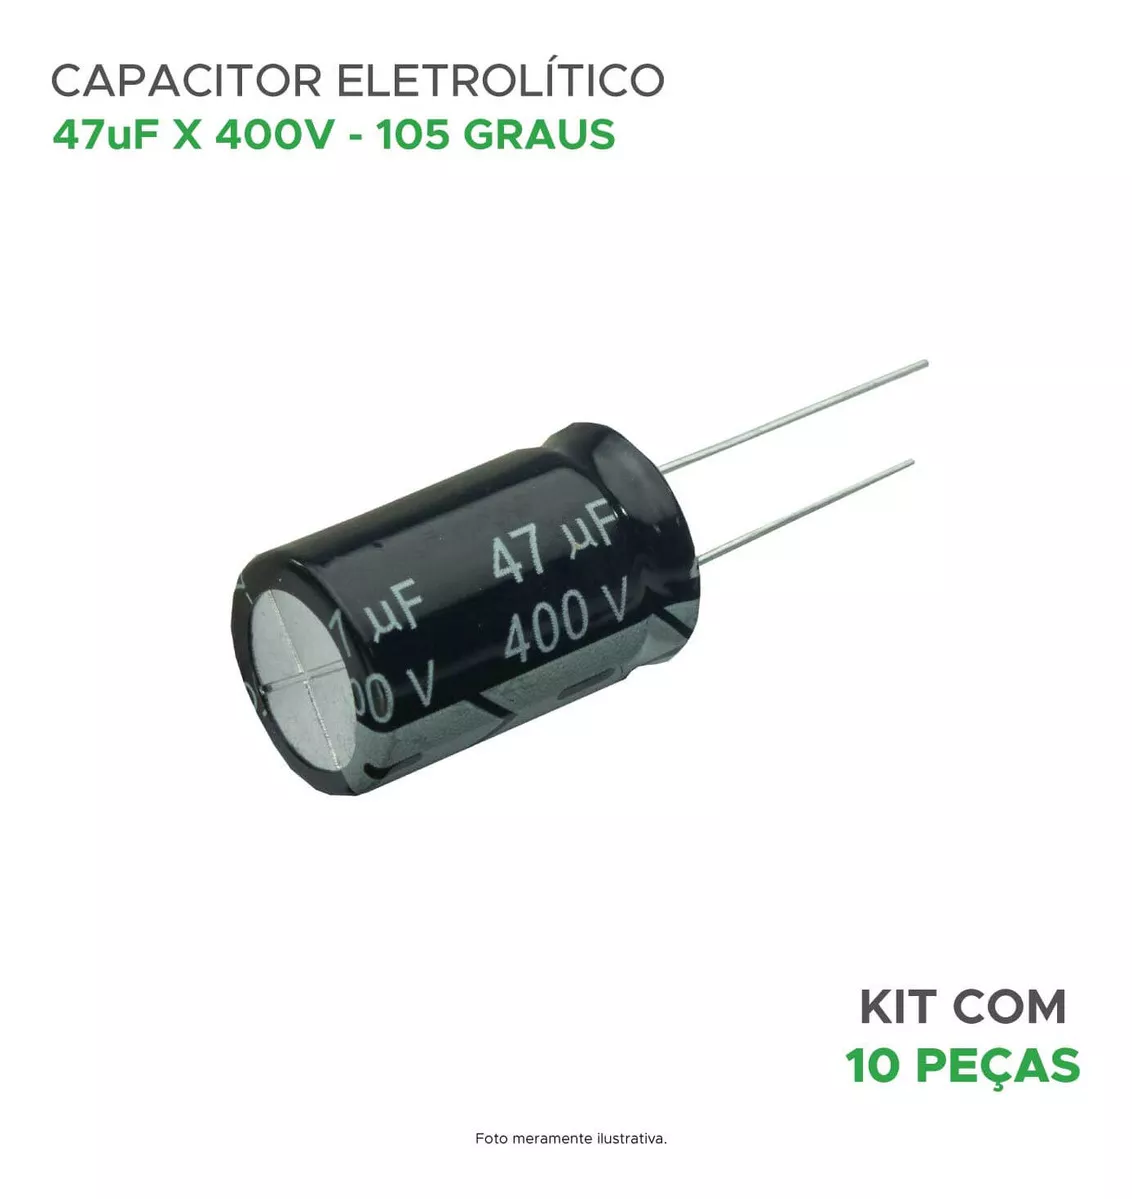 Terceira imagem para pesquisa de capacitor eletrolitico 47uf x 400v